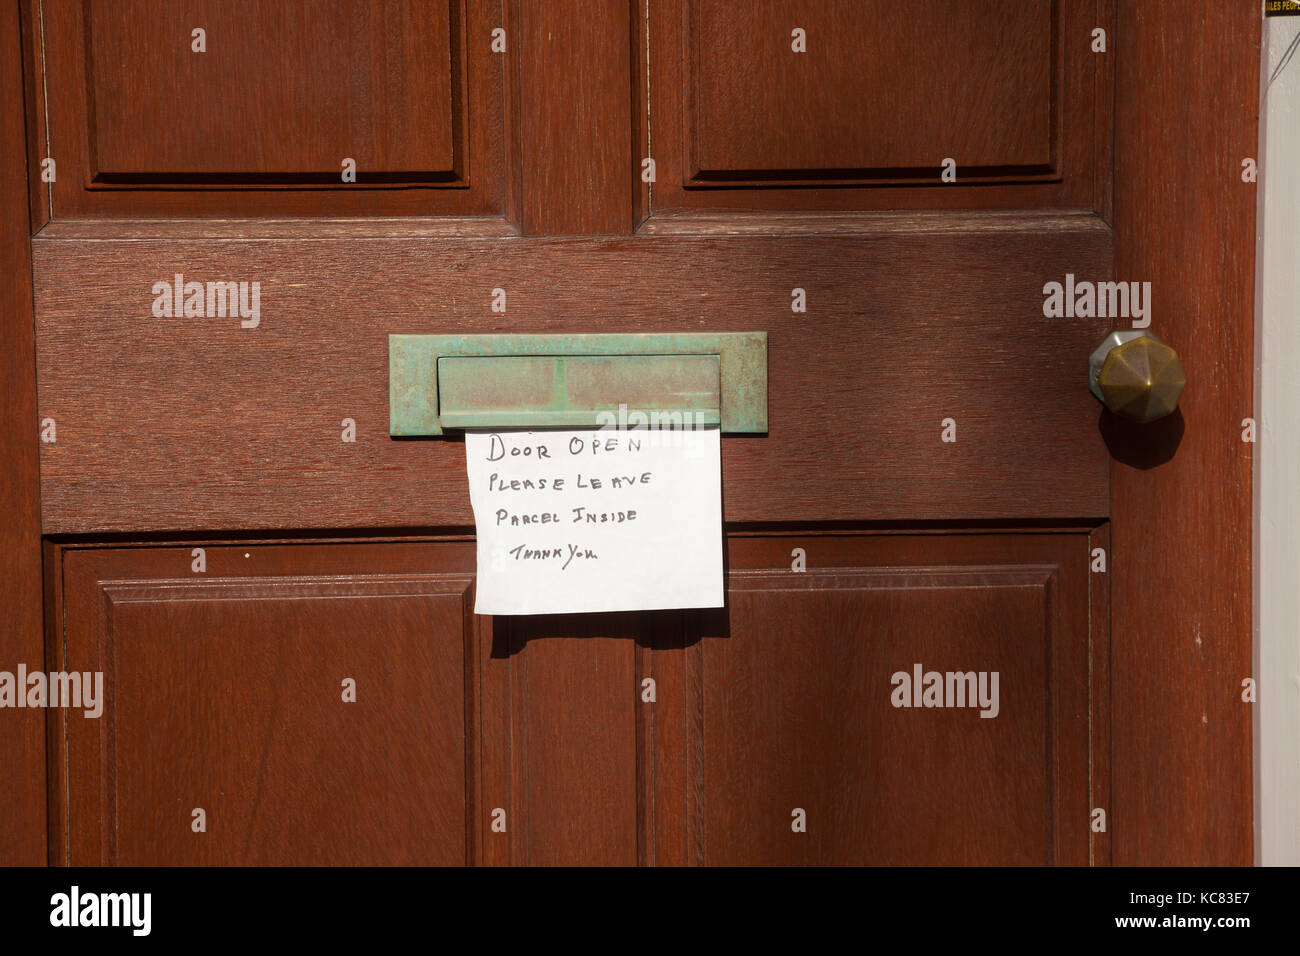 Une note collée à une porte de Fife disant qu'elle est ouverte, veuillez laisser la parcelle à l'intérieur. Banque D'Images